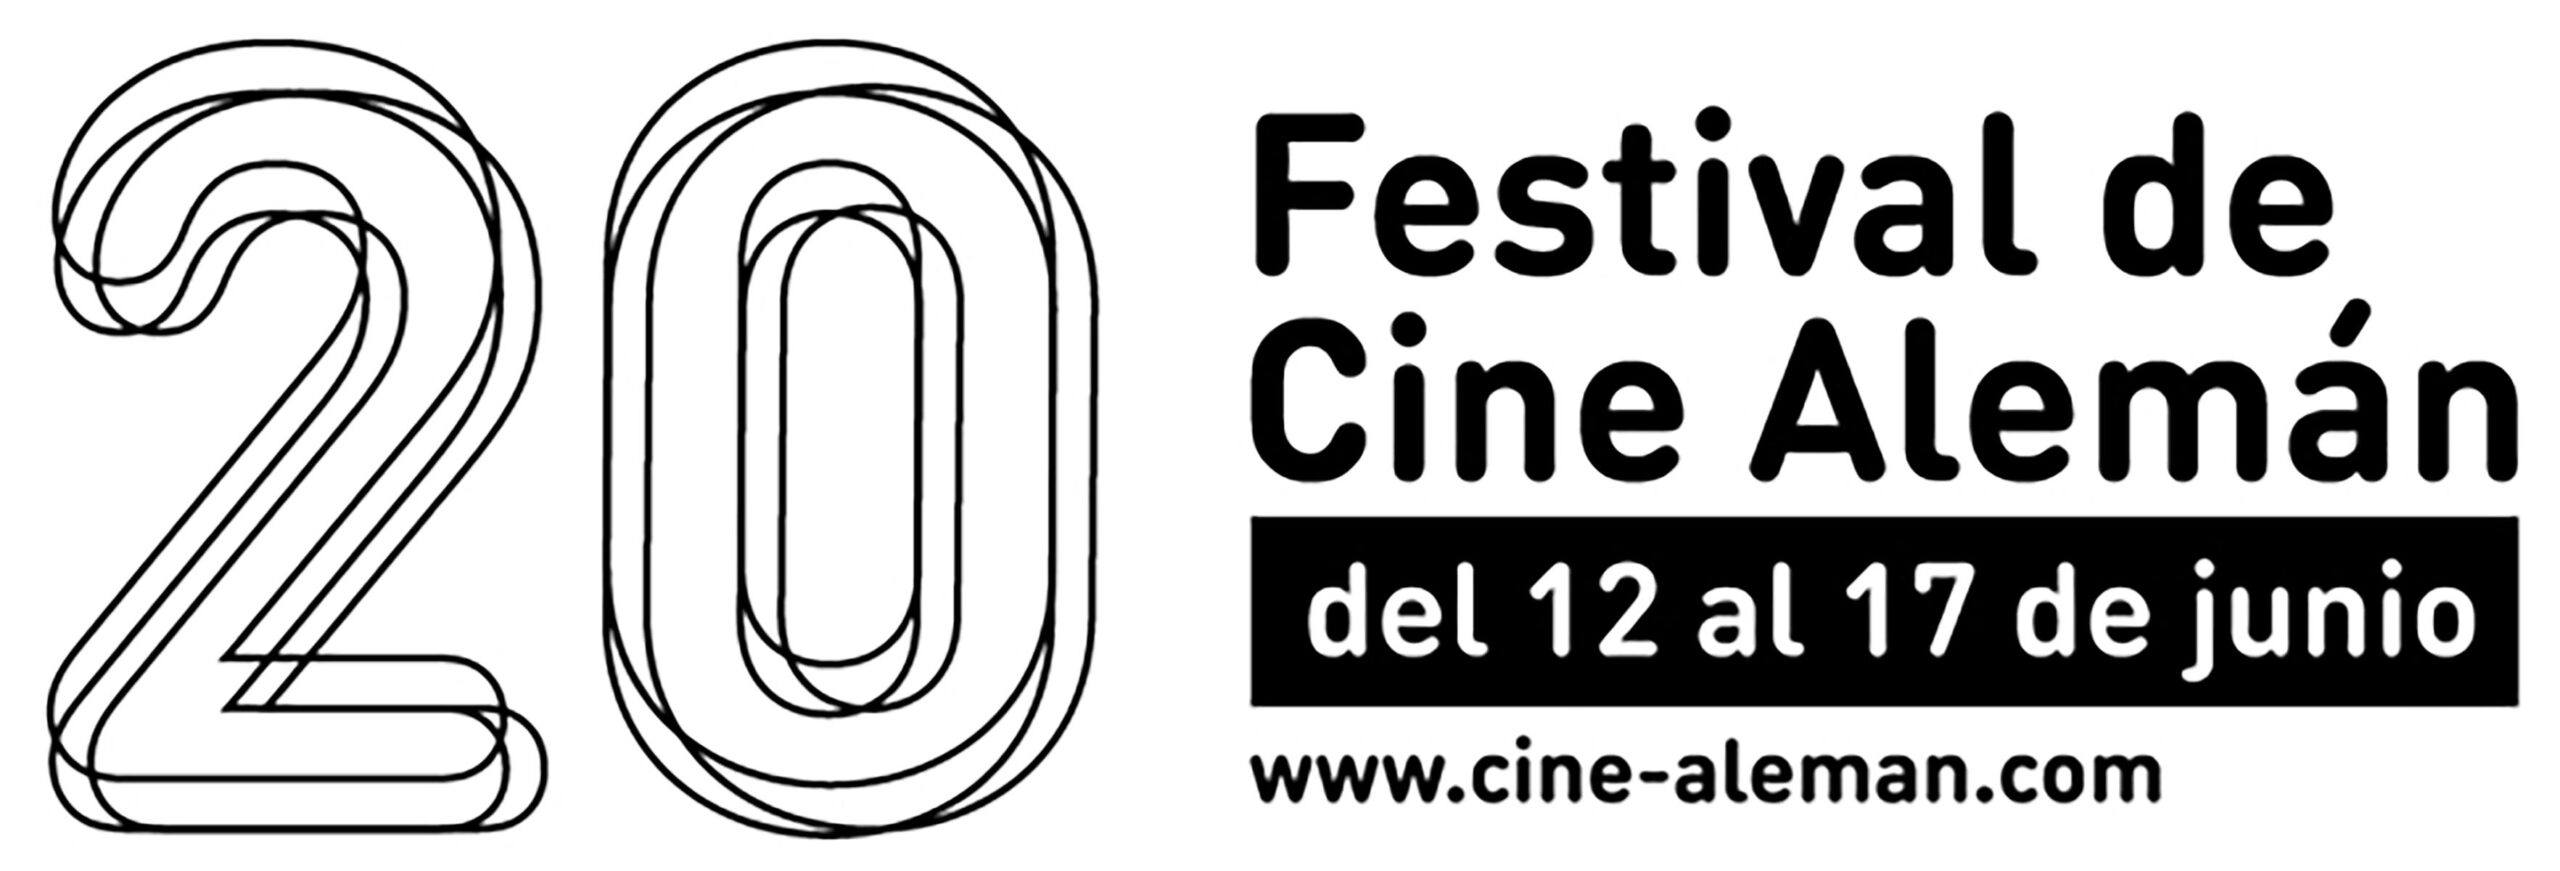 Llega el Festival de Cine Alemán de Madrid de 12 al 17 de junio